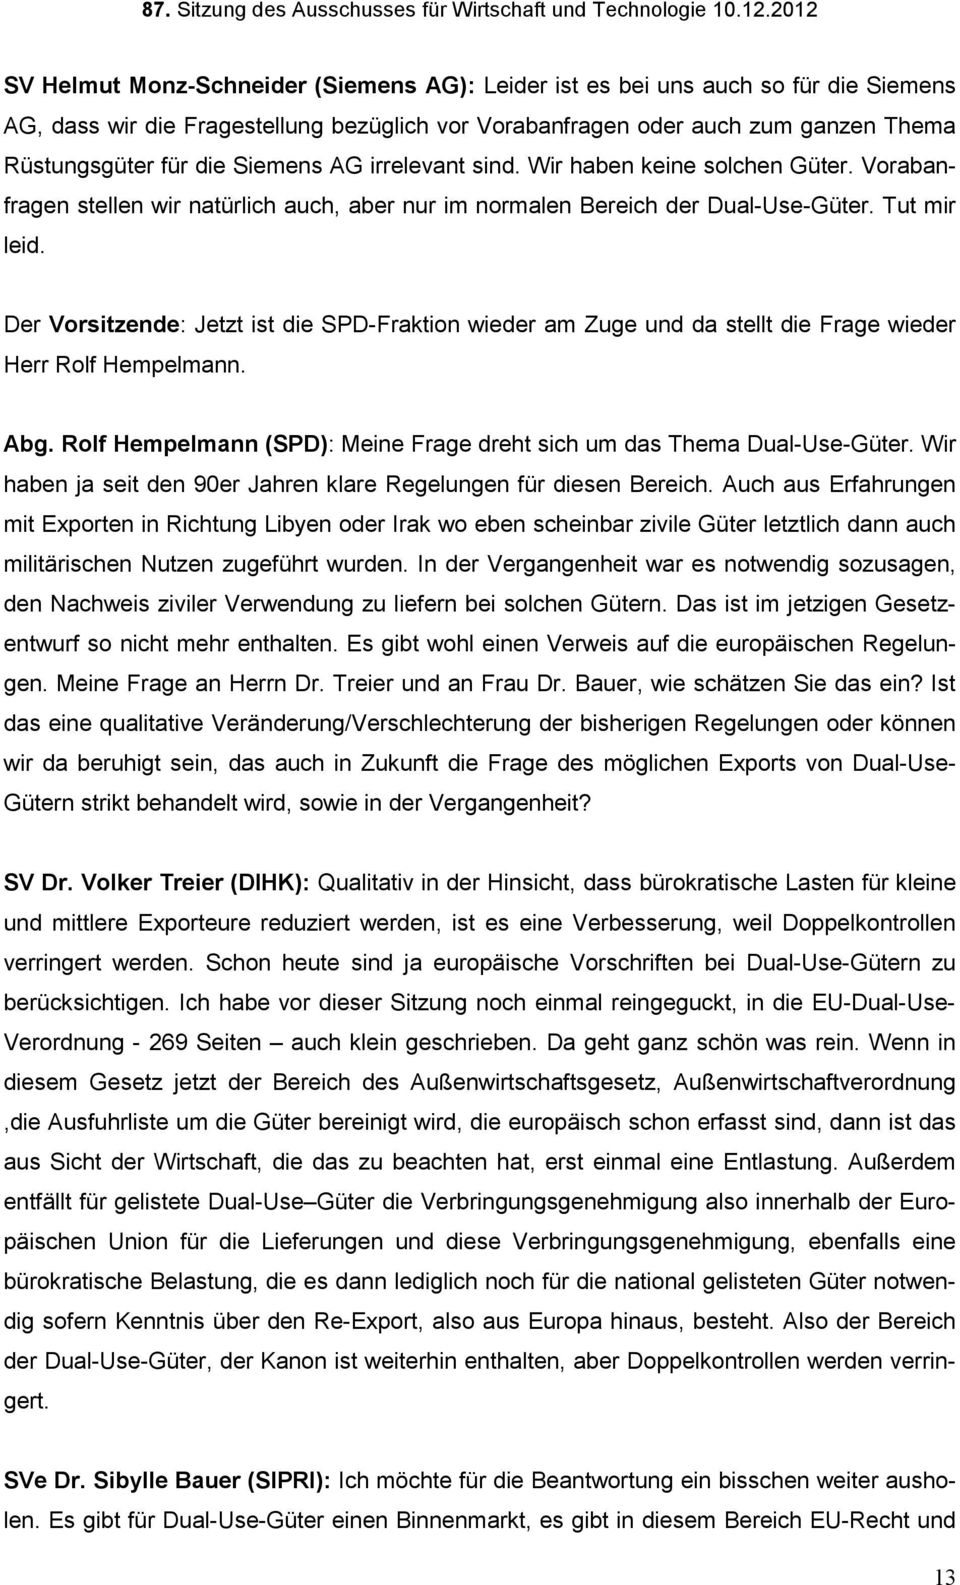 Der Vorsitzende: Jetzt ist die SPD-Fraktion wieder am Zuge und da stellt die Frage wieder Herr Rolf Hempelmann. Abg. Rolf Hempelmann (SPD): Meine Frage dreht sich um das Thema Dual-Use-Güter.